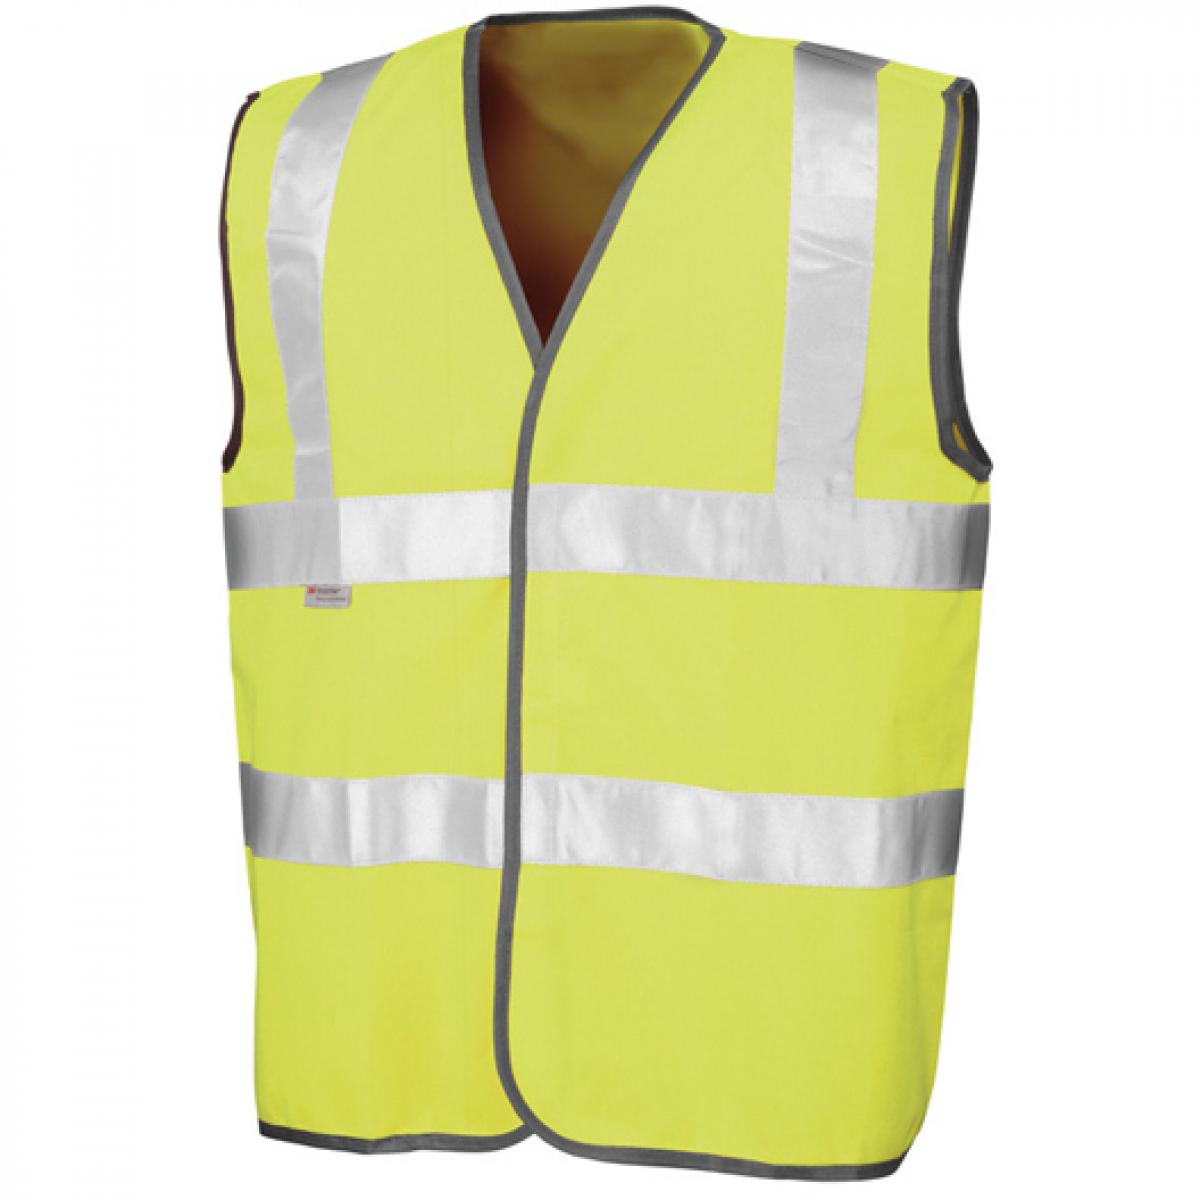 Hersteller: Result Herstellernummer: R021X Artikelbezeichnung: Herren Safety Hi-Viz Vest / nach ISOEN20471:2013 Farbe: Fluorescent Yellow